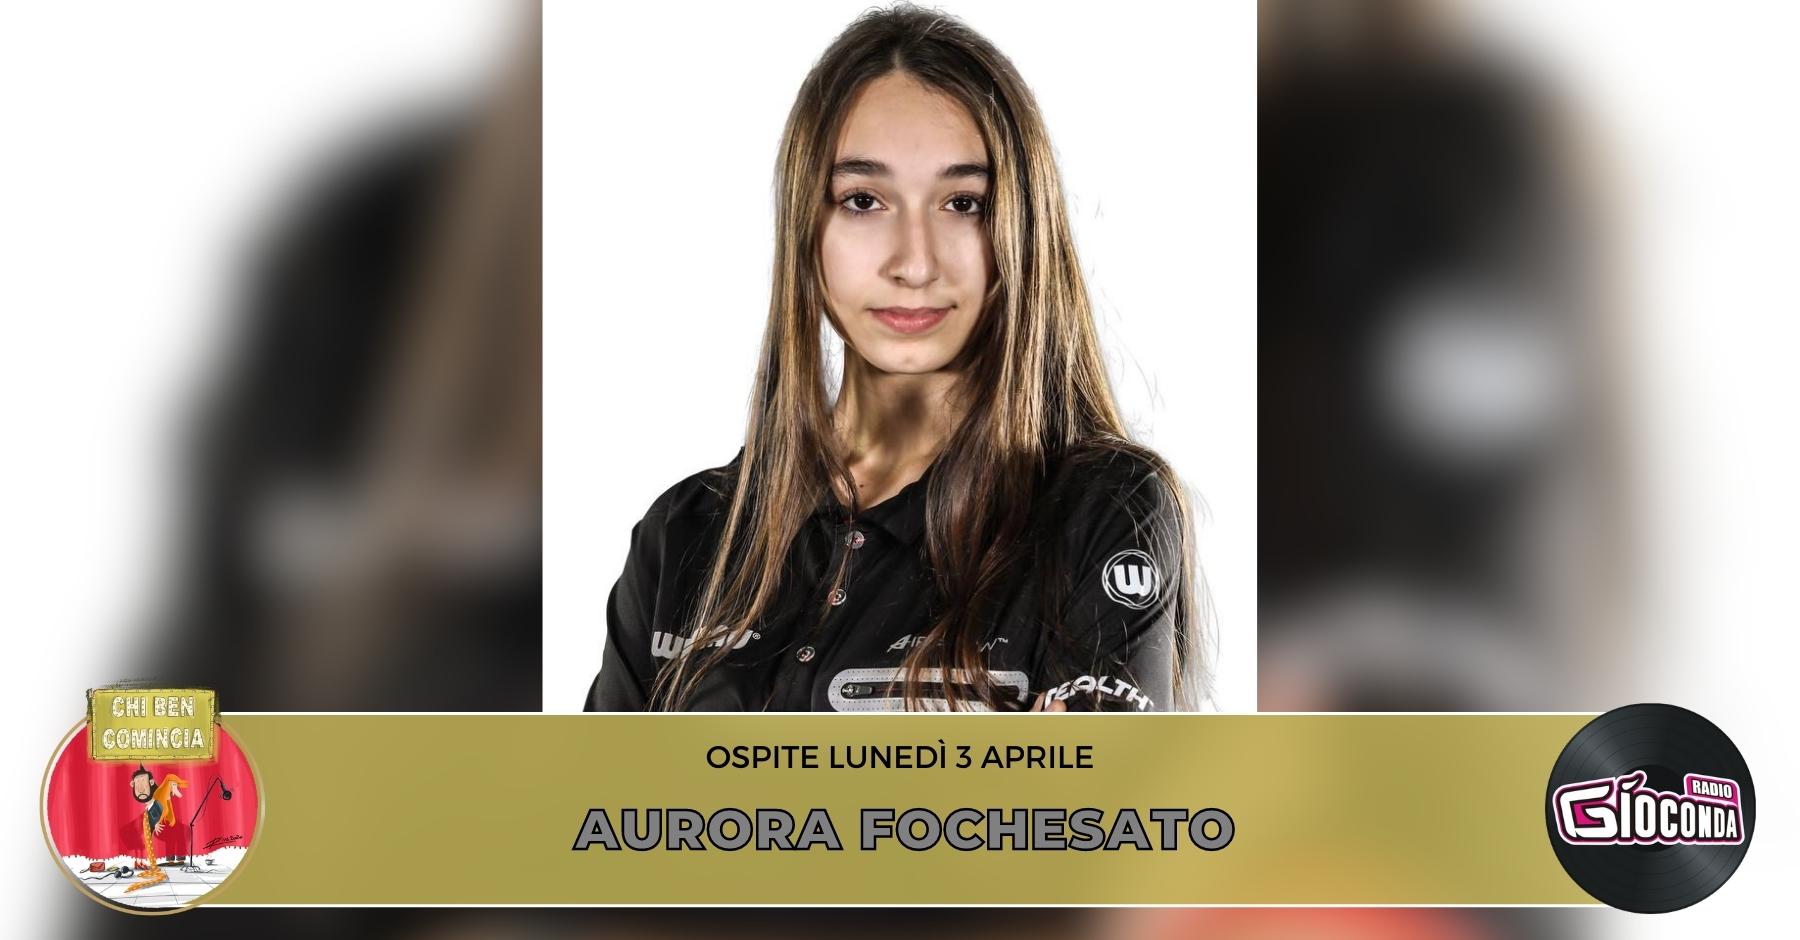 Aurora Fochesato, la più giovane campionessa italiana di freccette, è l'ospite della nuova puntata di "Chi ben comincia" in onda lunedì 3 aprile alle 18.00.